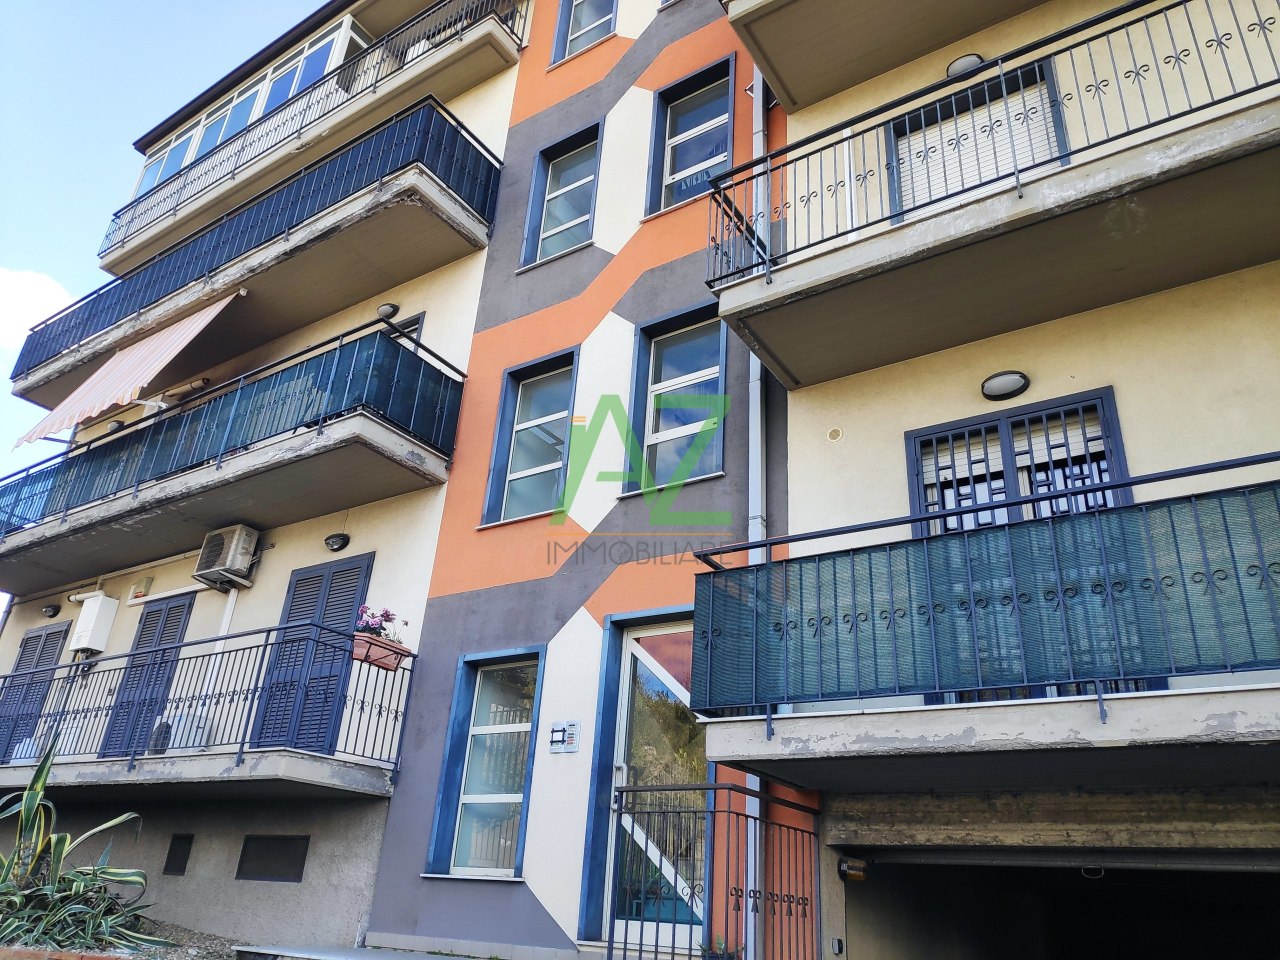 Appartamento in vendita a Camporotondo Etneo, 3 locali, prezzo € 85.000 | CambioCasa.it